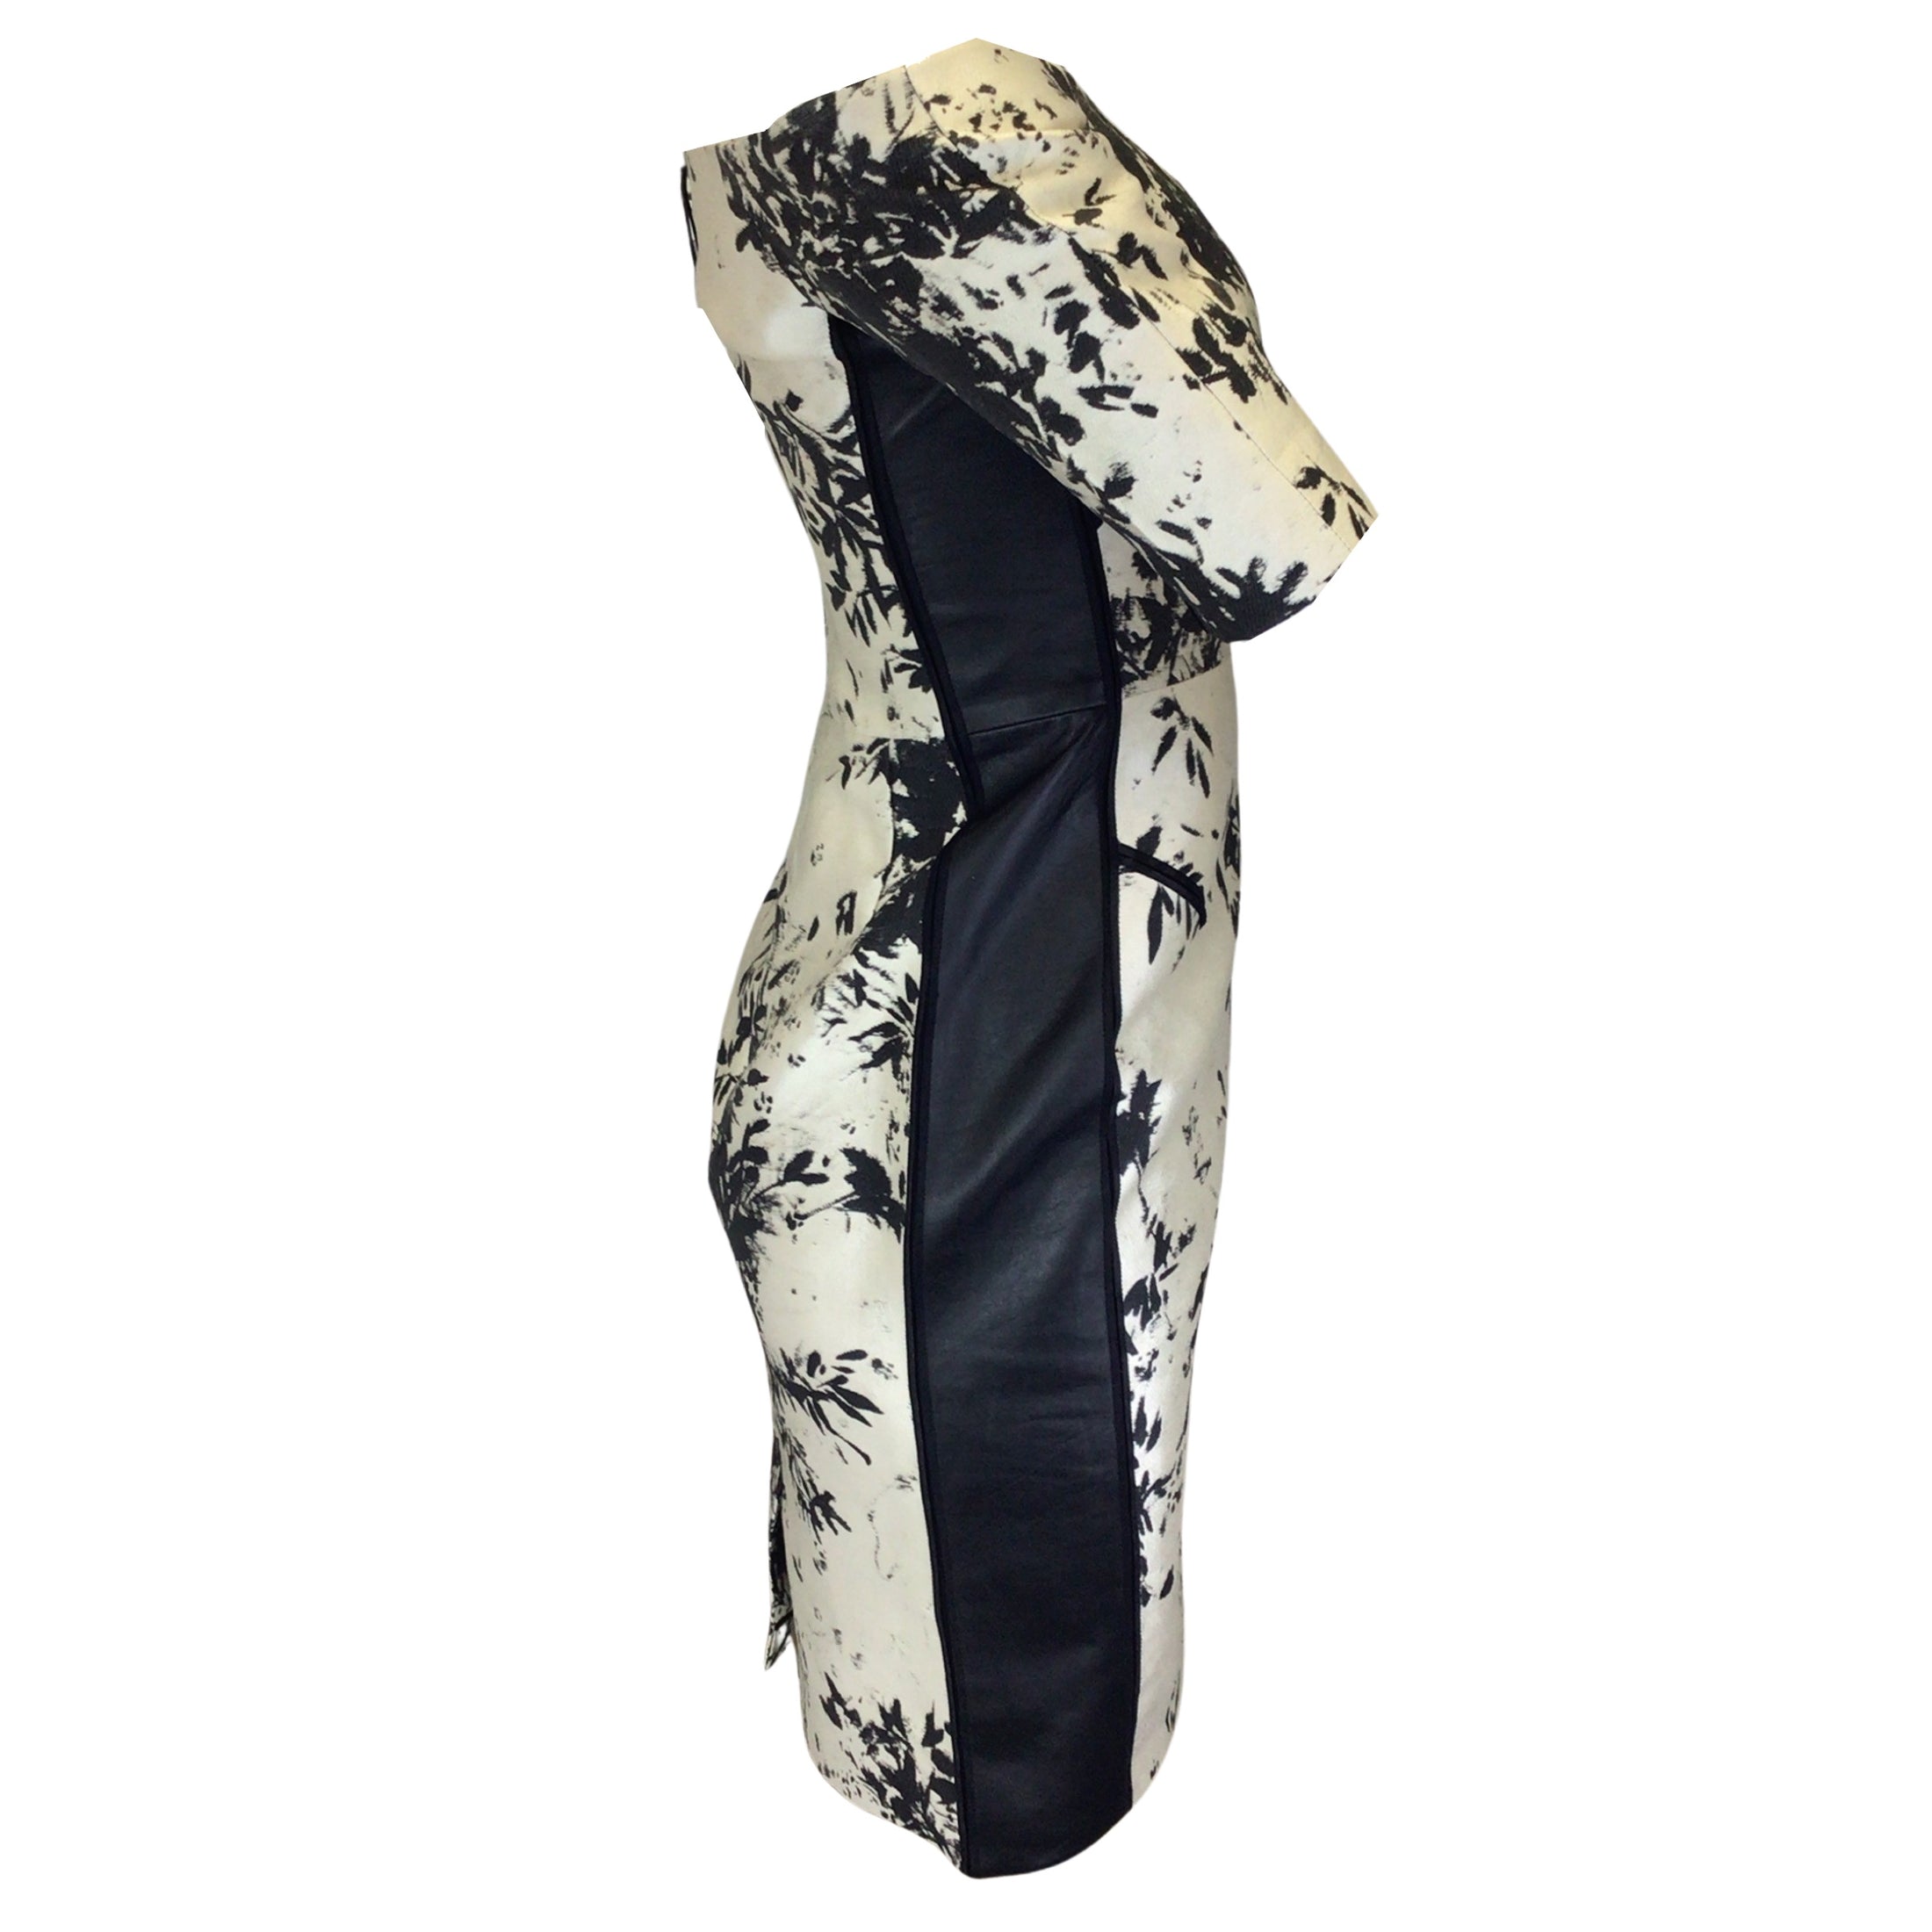 J. Mendel Champagne / Black Lambskin Leather Trimmed Off-the-Shoulder Jacquard Dress